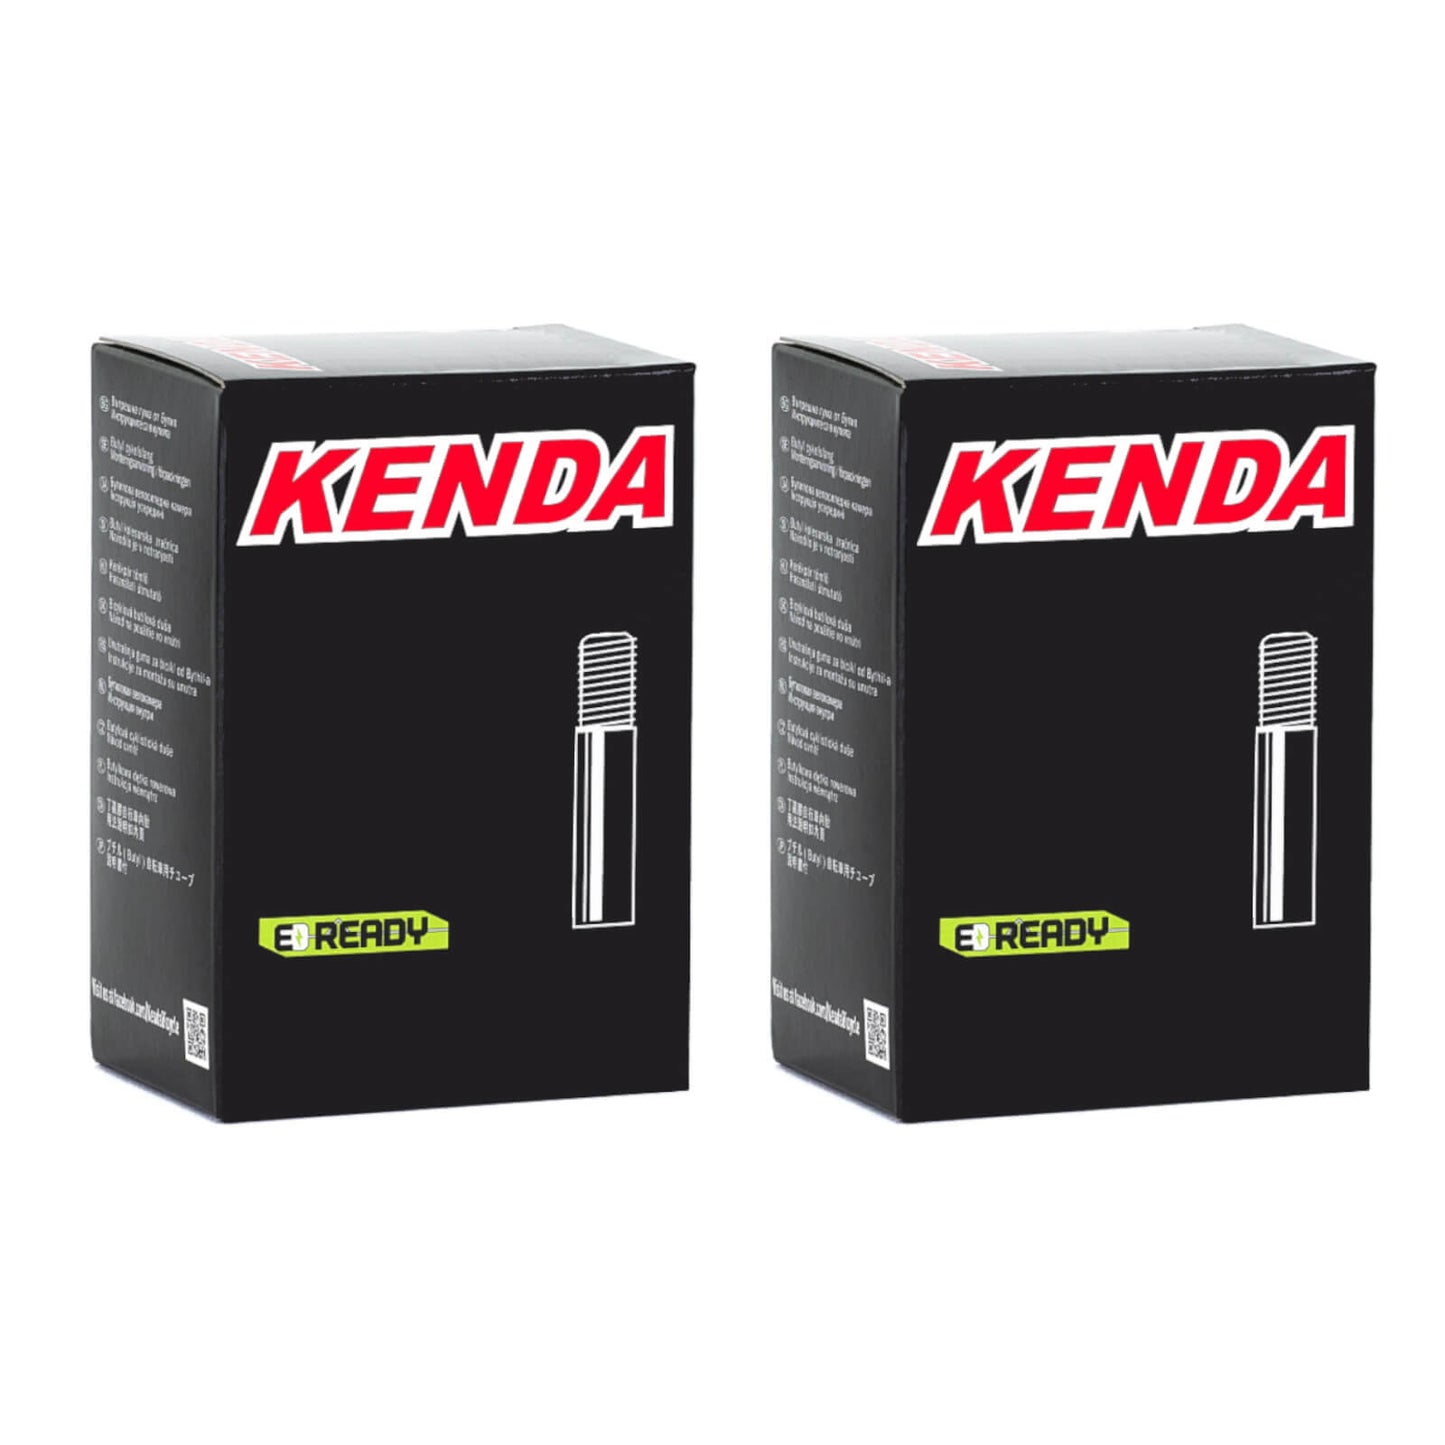 Kenda 20x1-1/8"-1-3/8"" 20 Inch Schrader Valve Bike Inner Tube Pack of 2